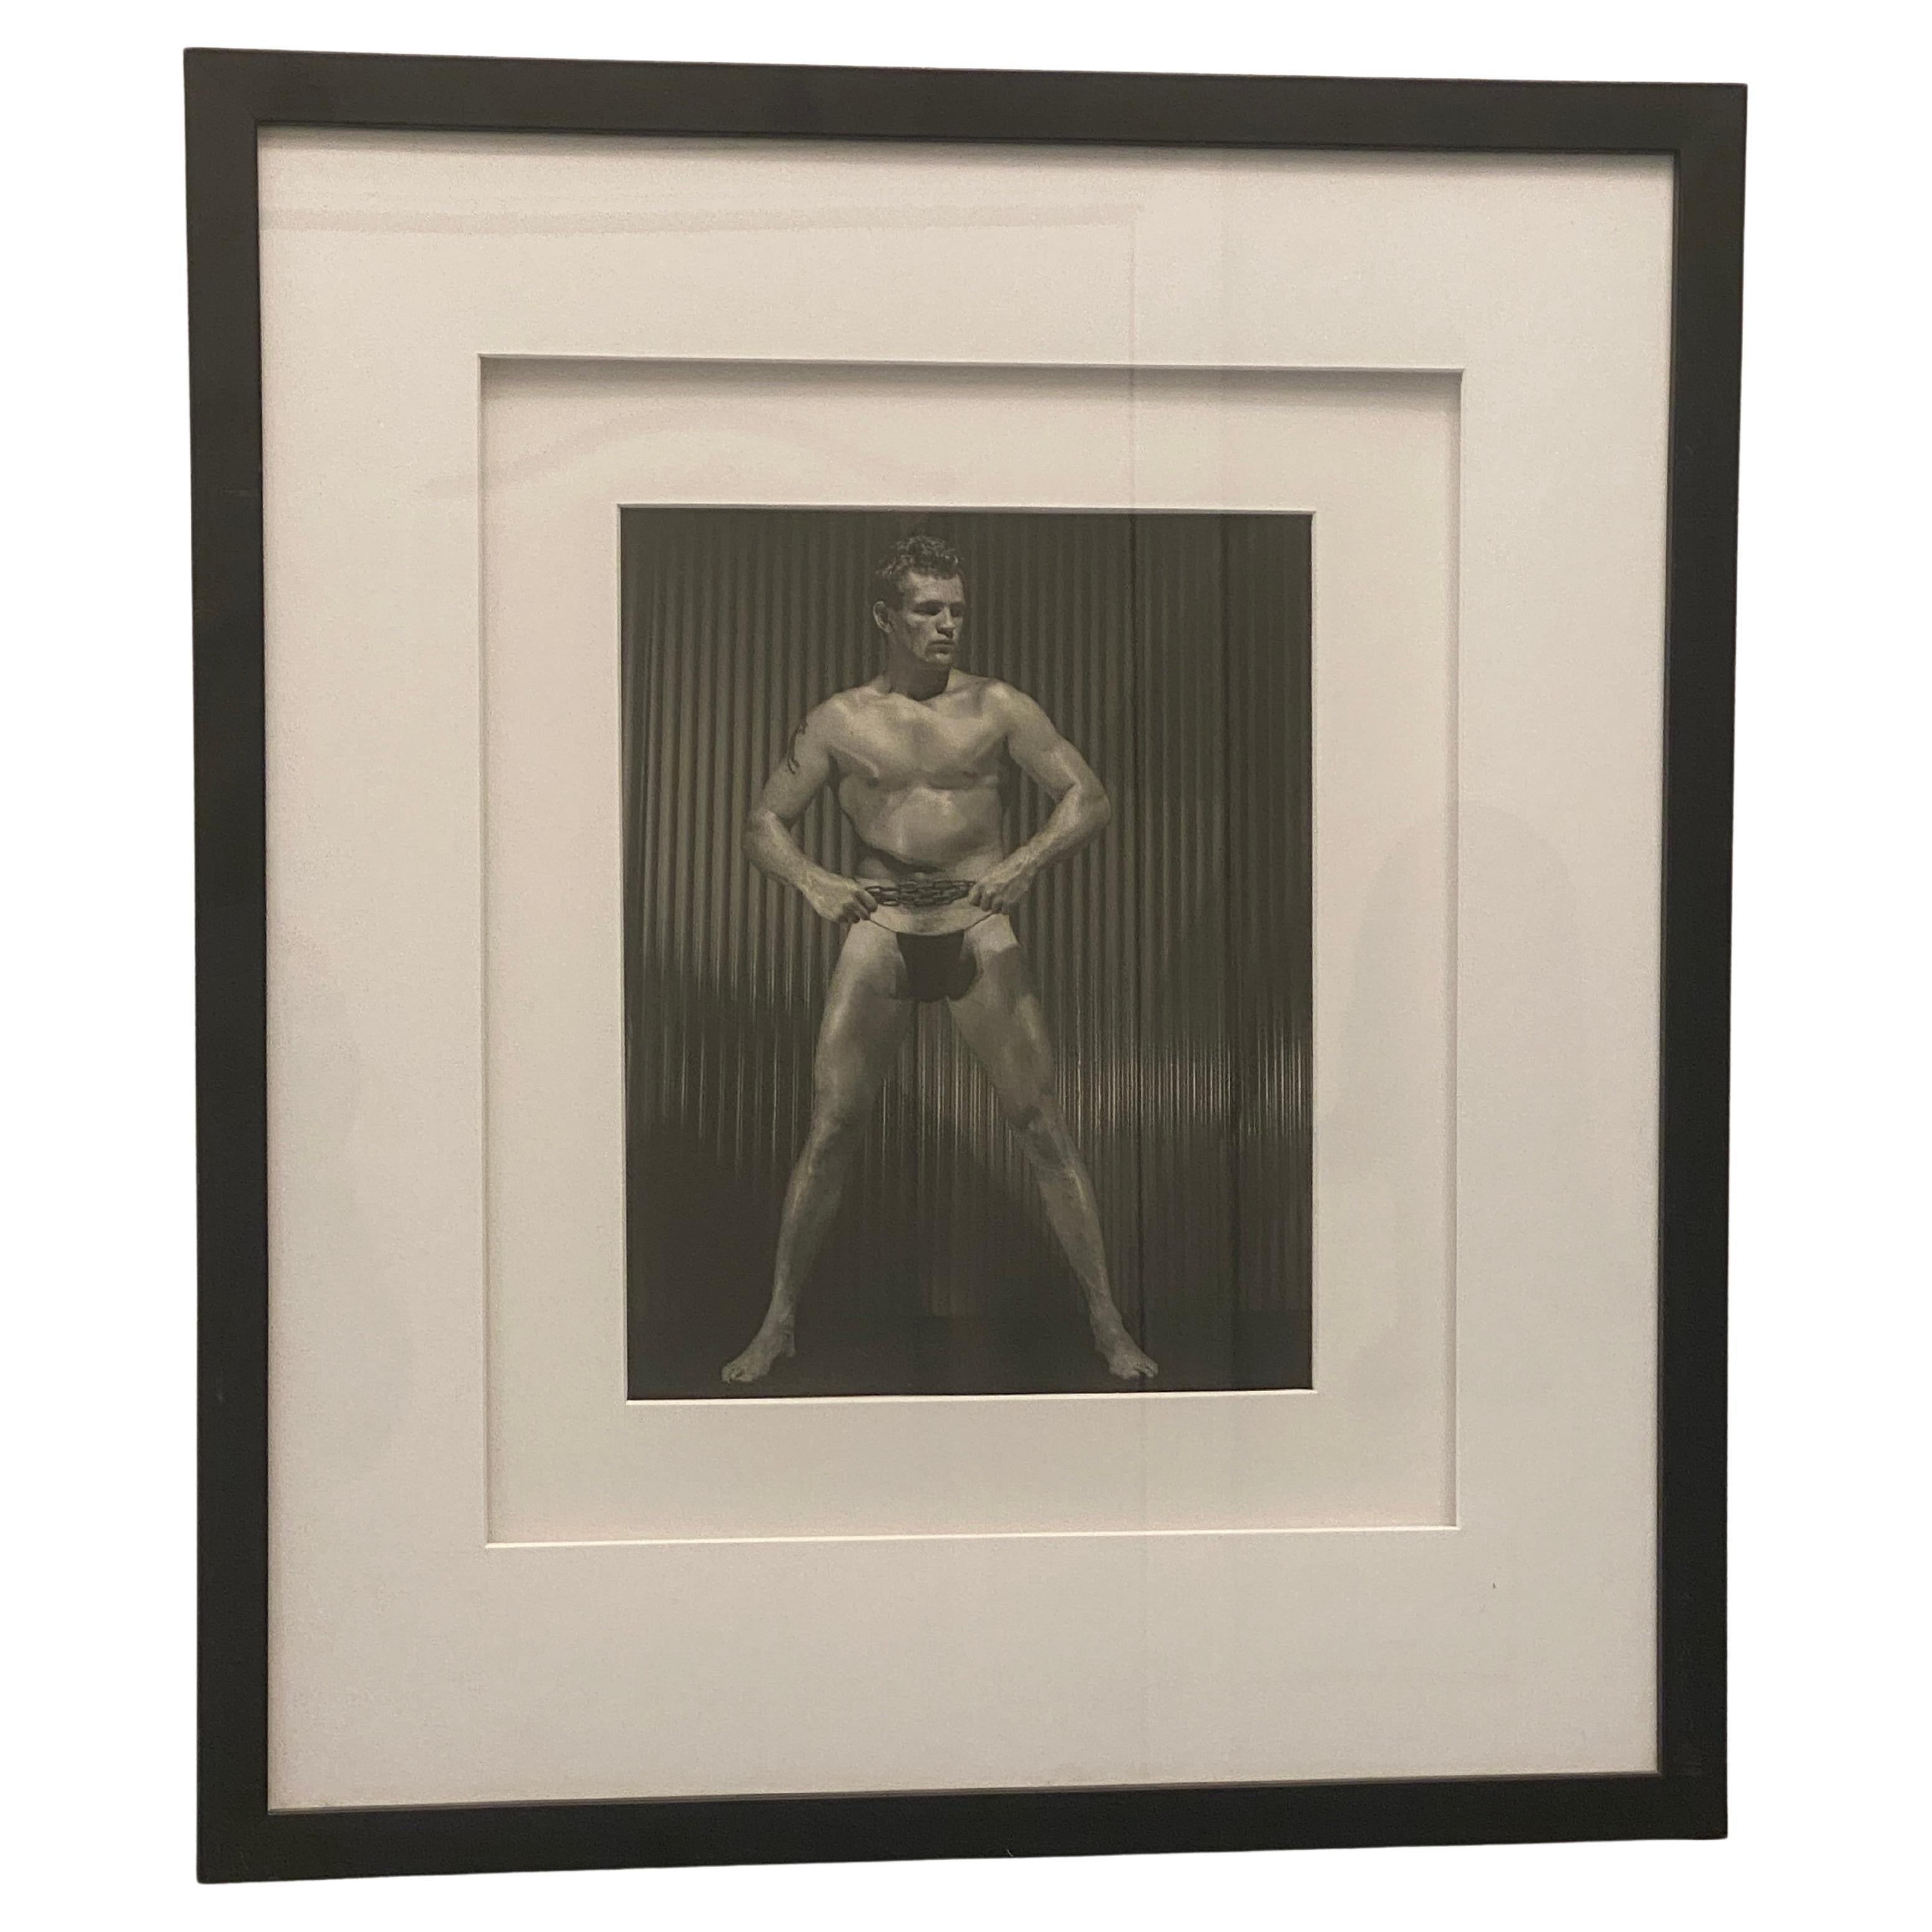 Issue d'une importante collection de photographies de physique masculin et d'Icone datant de plus de 25 ans, cette image emblématique d'un modèle masculin tenant une chaîne en métal... Imprimées dans les années 1960, elles sont toutes signées par le